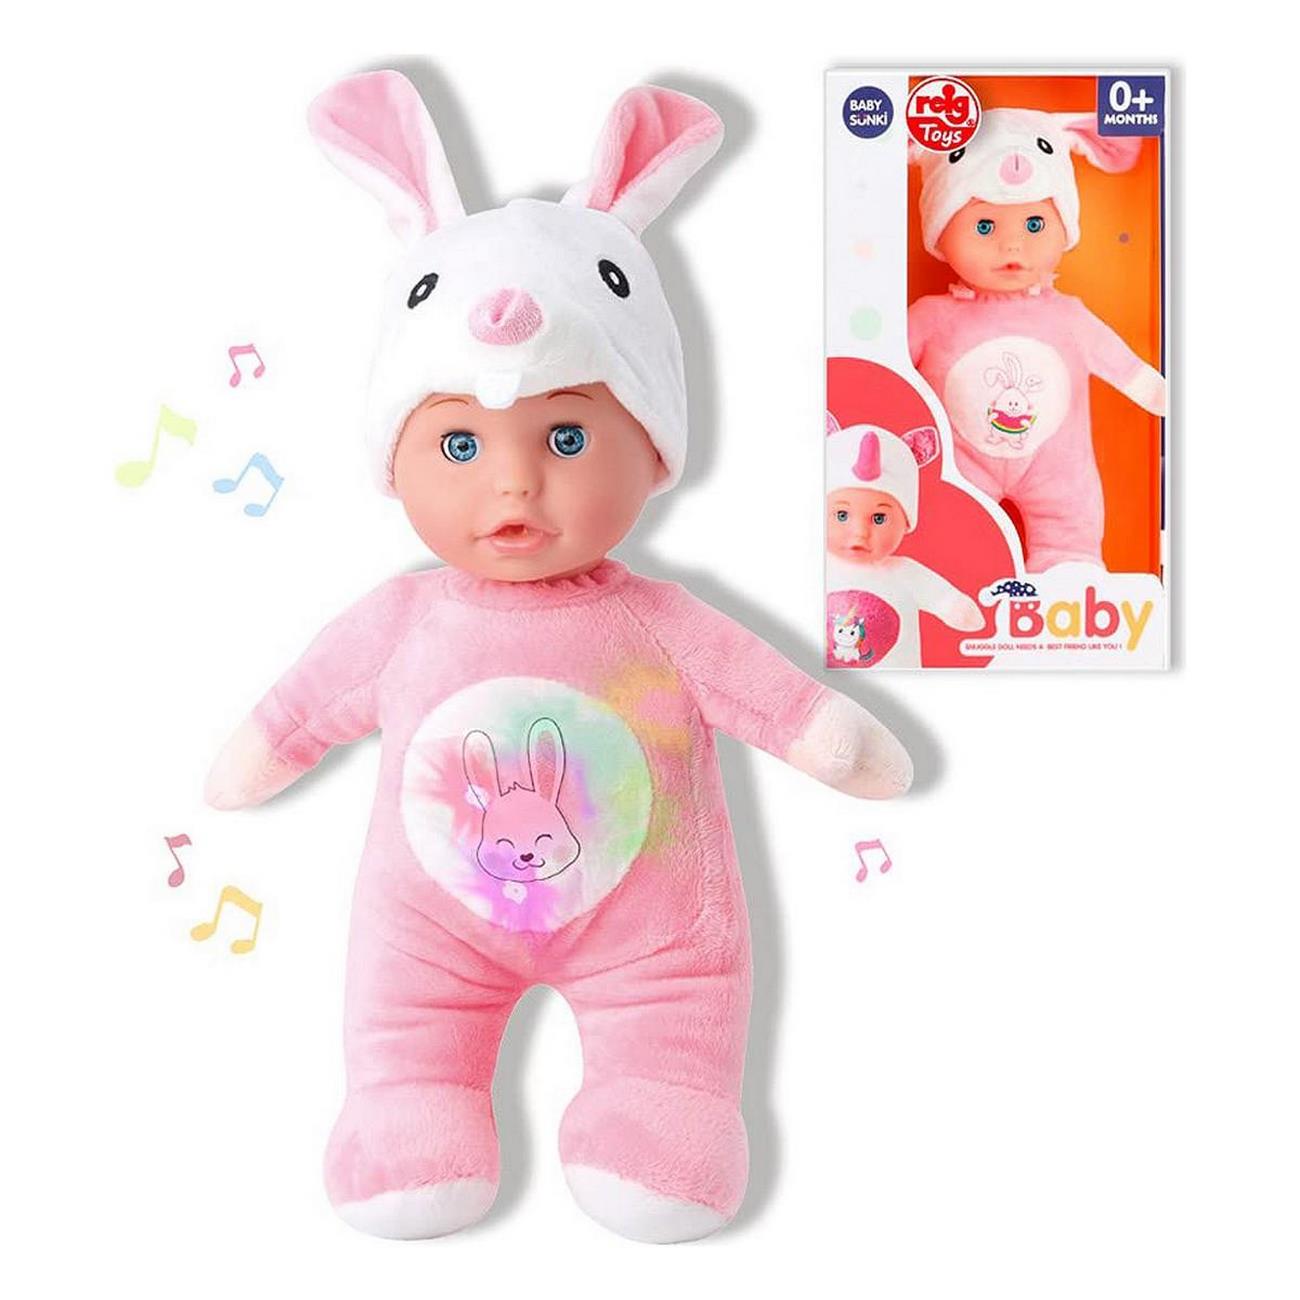 Muñeco Bebe Niñas Mi Baby Sonido Felpa Juguete Pijama Conejo